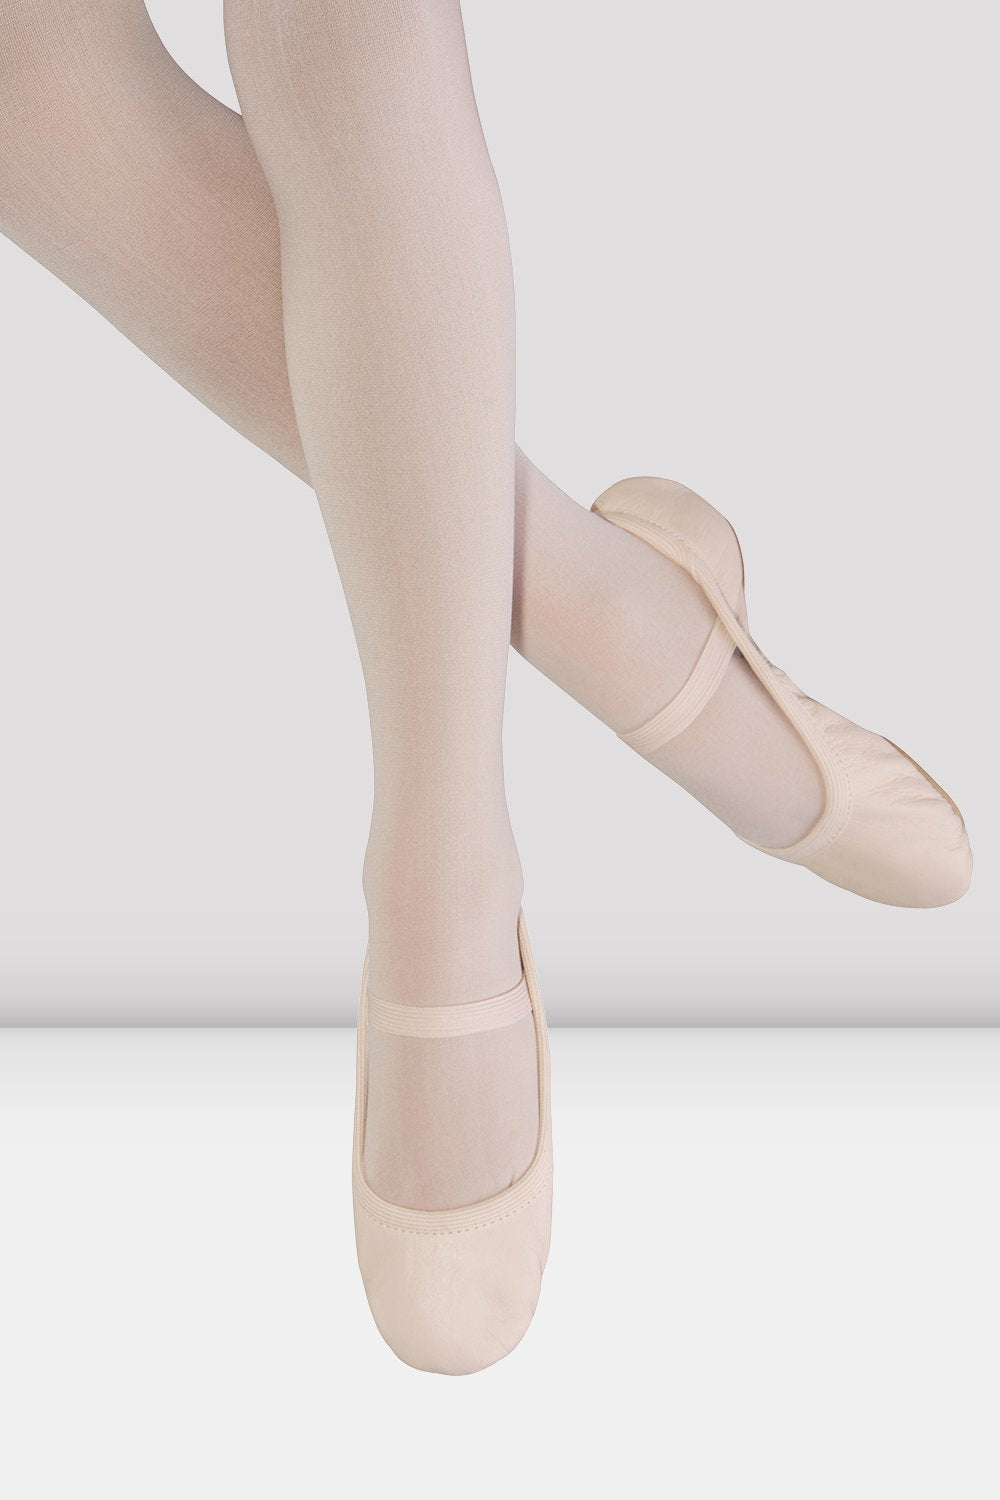 BLOCH - SO249L - Giselle (no tie) Ladies Leather Ballet Shoe